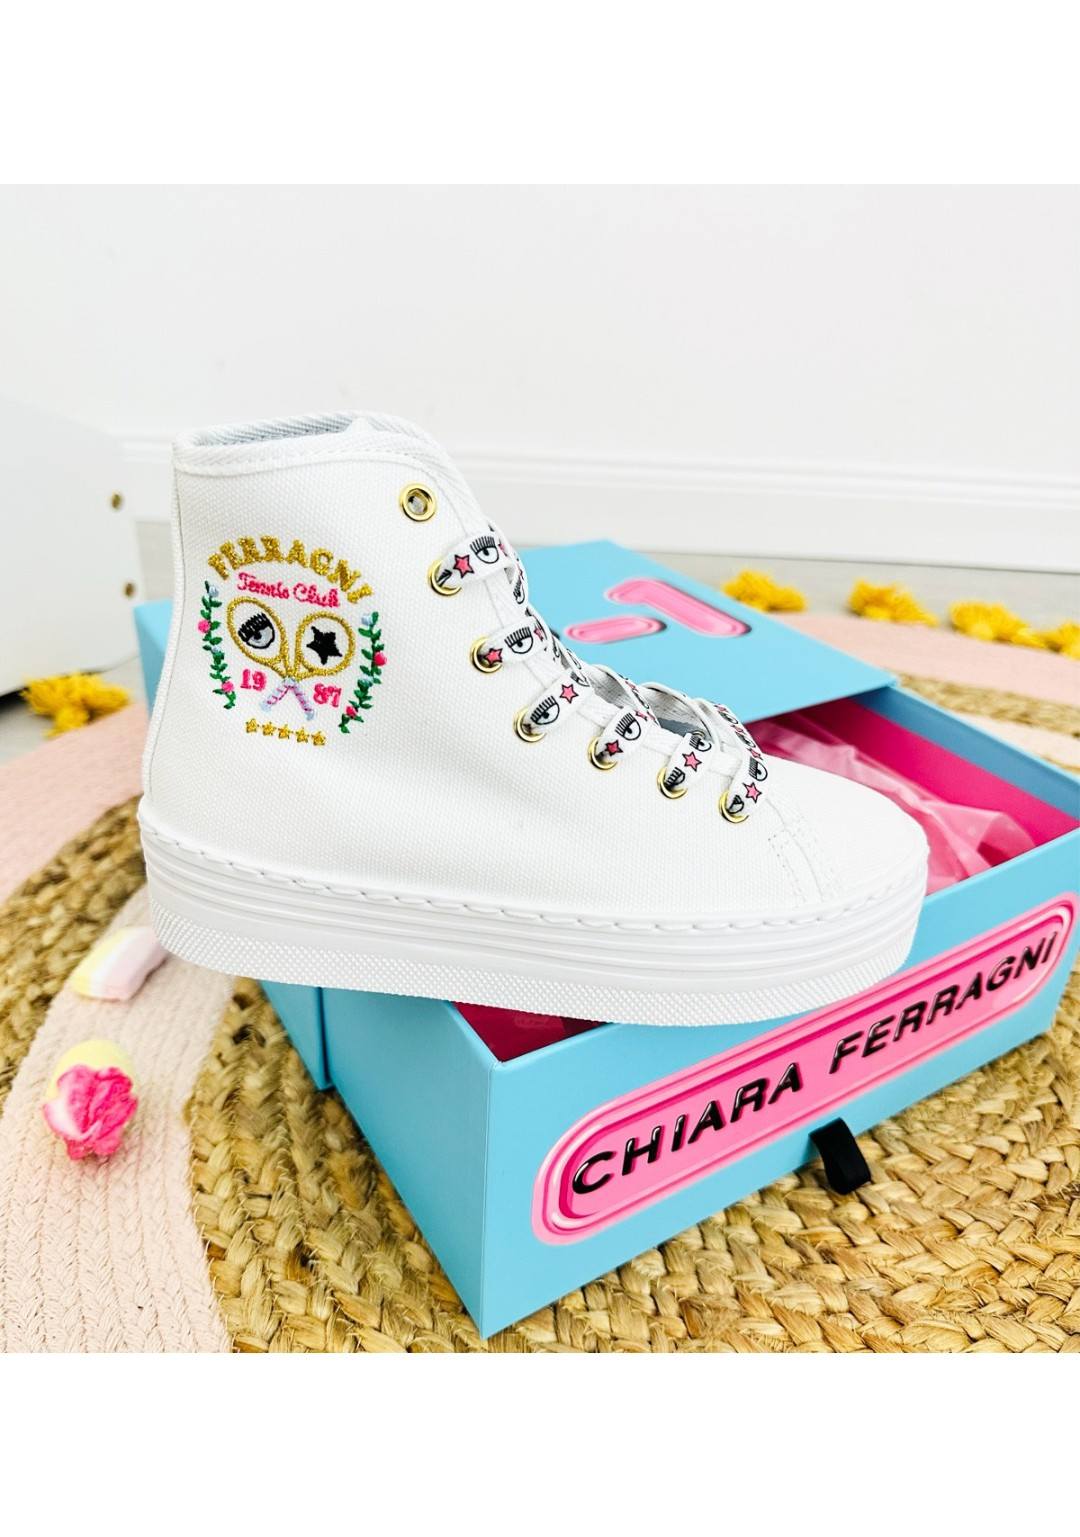 Chiara Ferragni - Sneaker Alta - Bambine e ragazze - CFB216-009